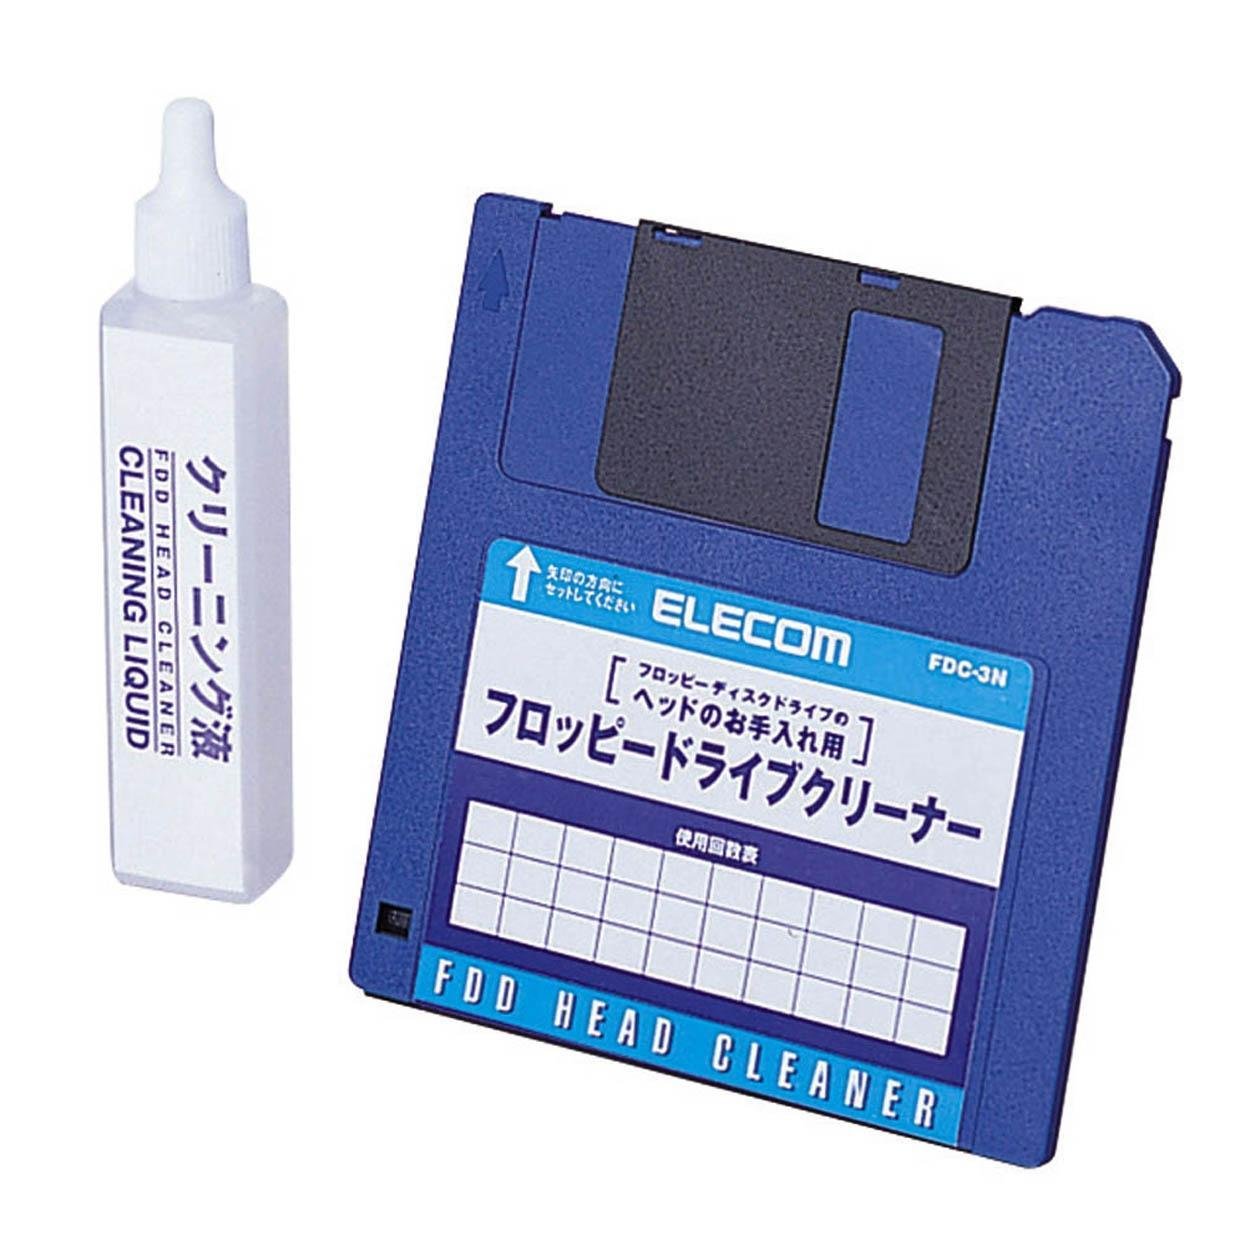 Download Floppy Disk Cleaner Nomer 38